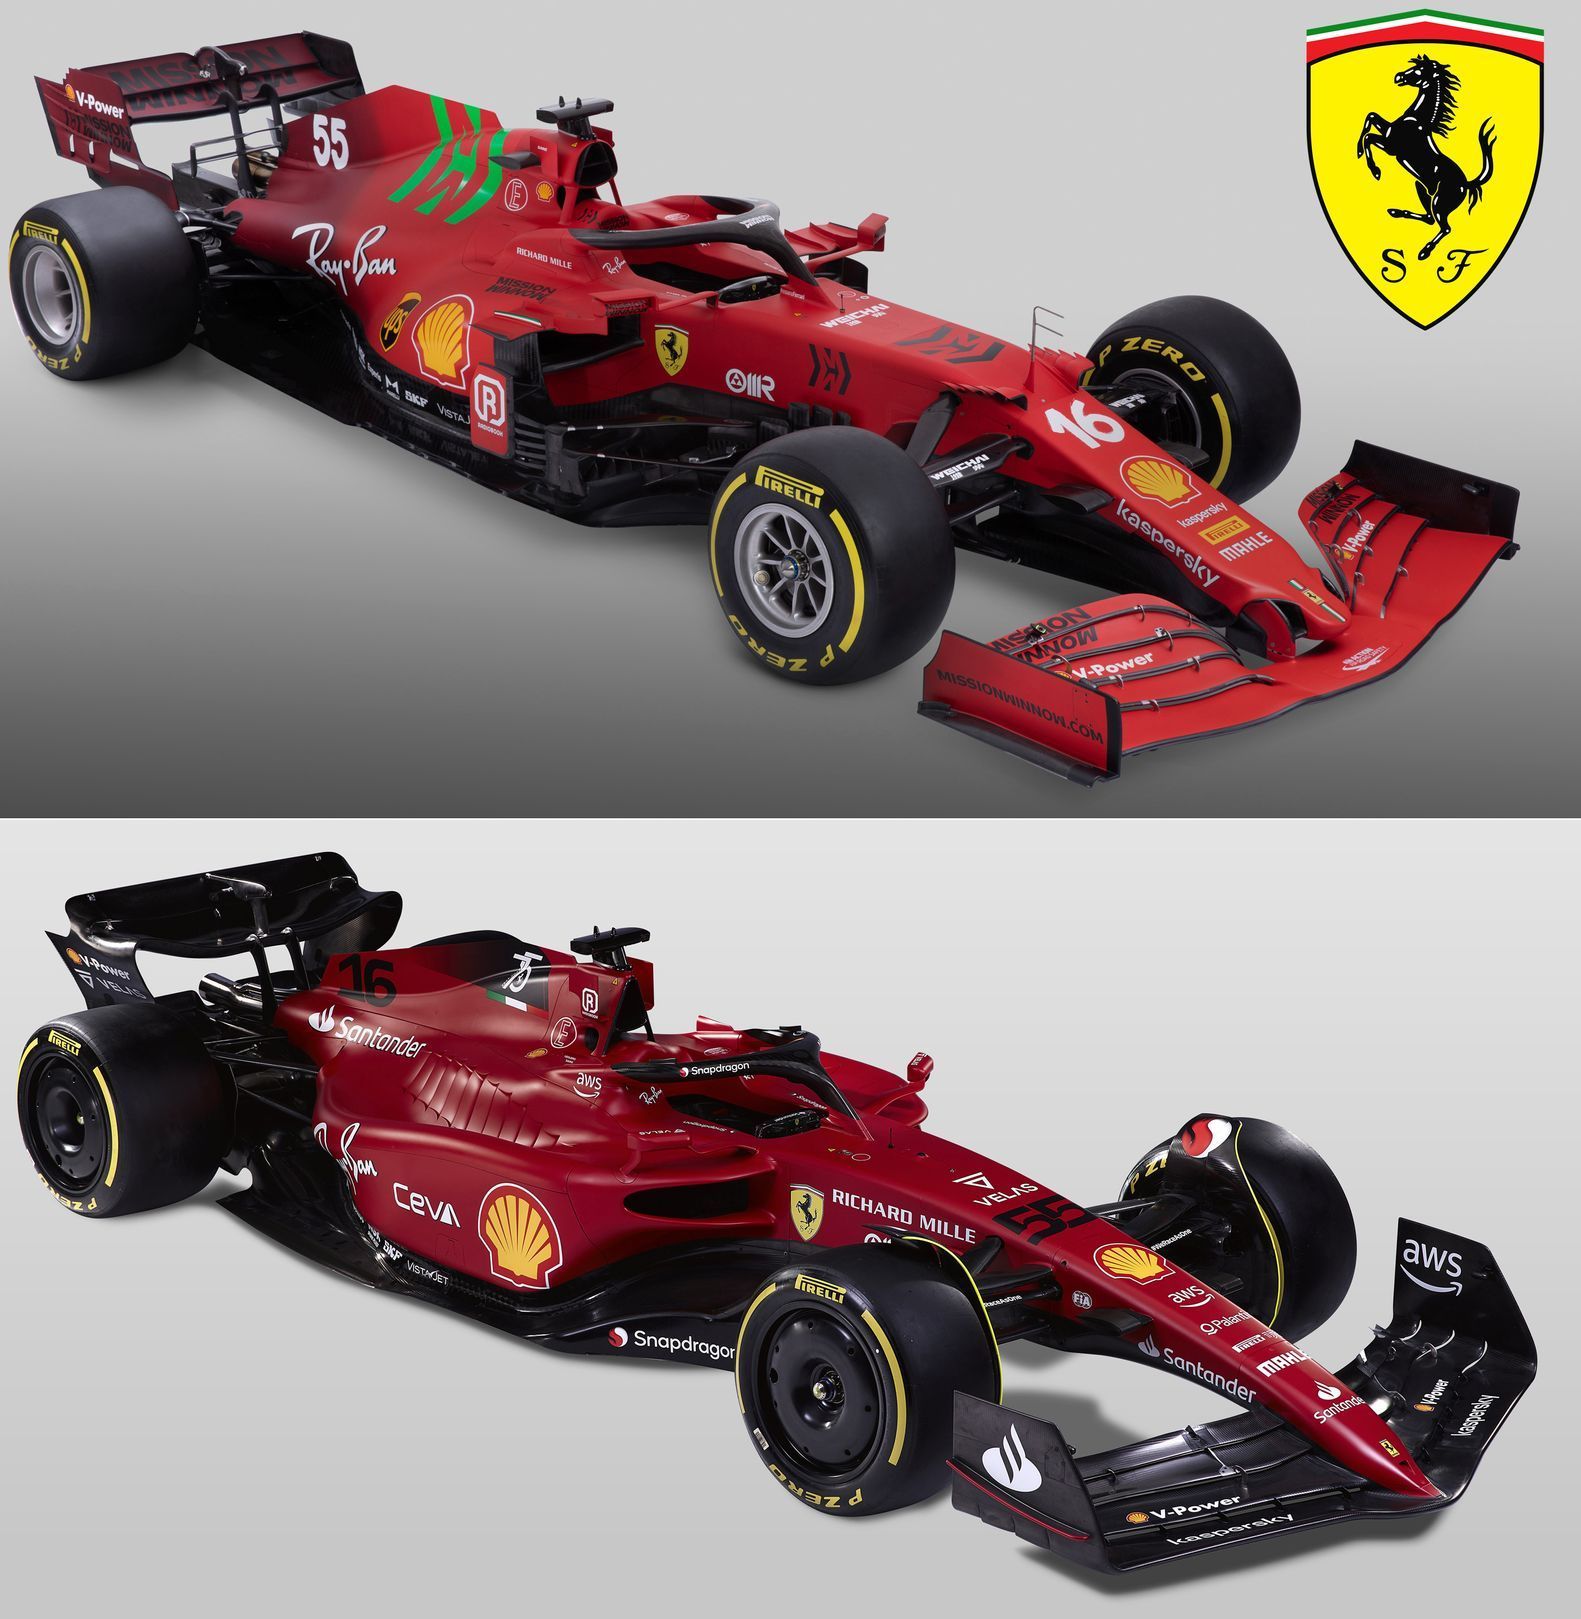 Porovnání monopostů F1 Ferrari z roku 2021 (nahoře) a 2022